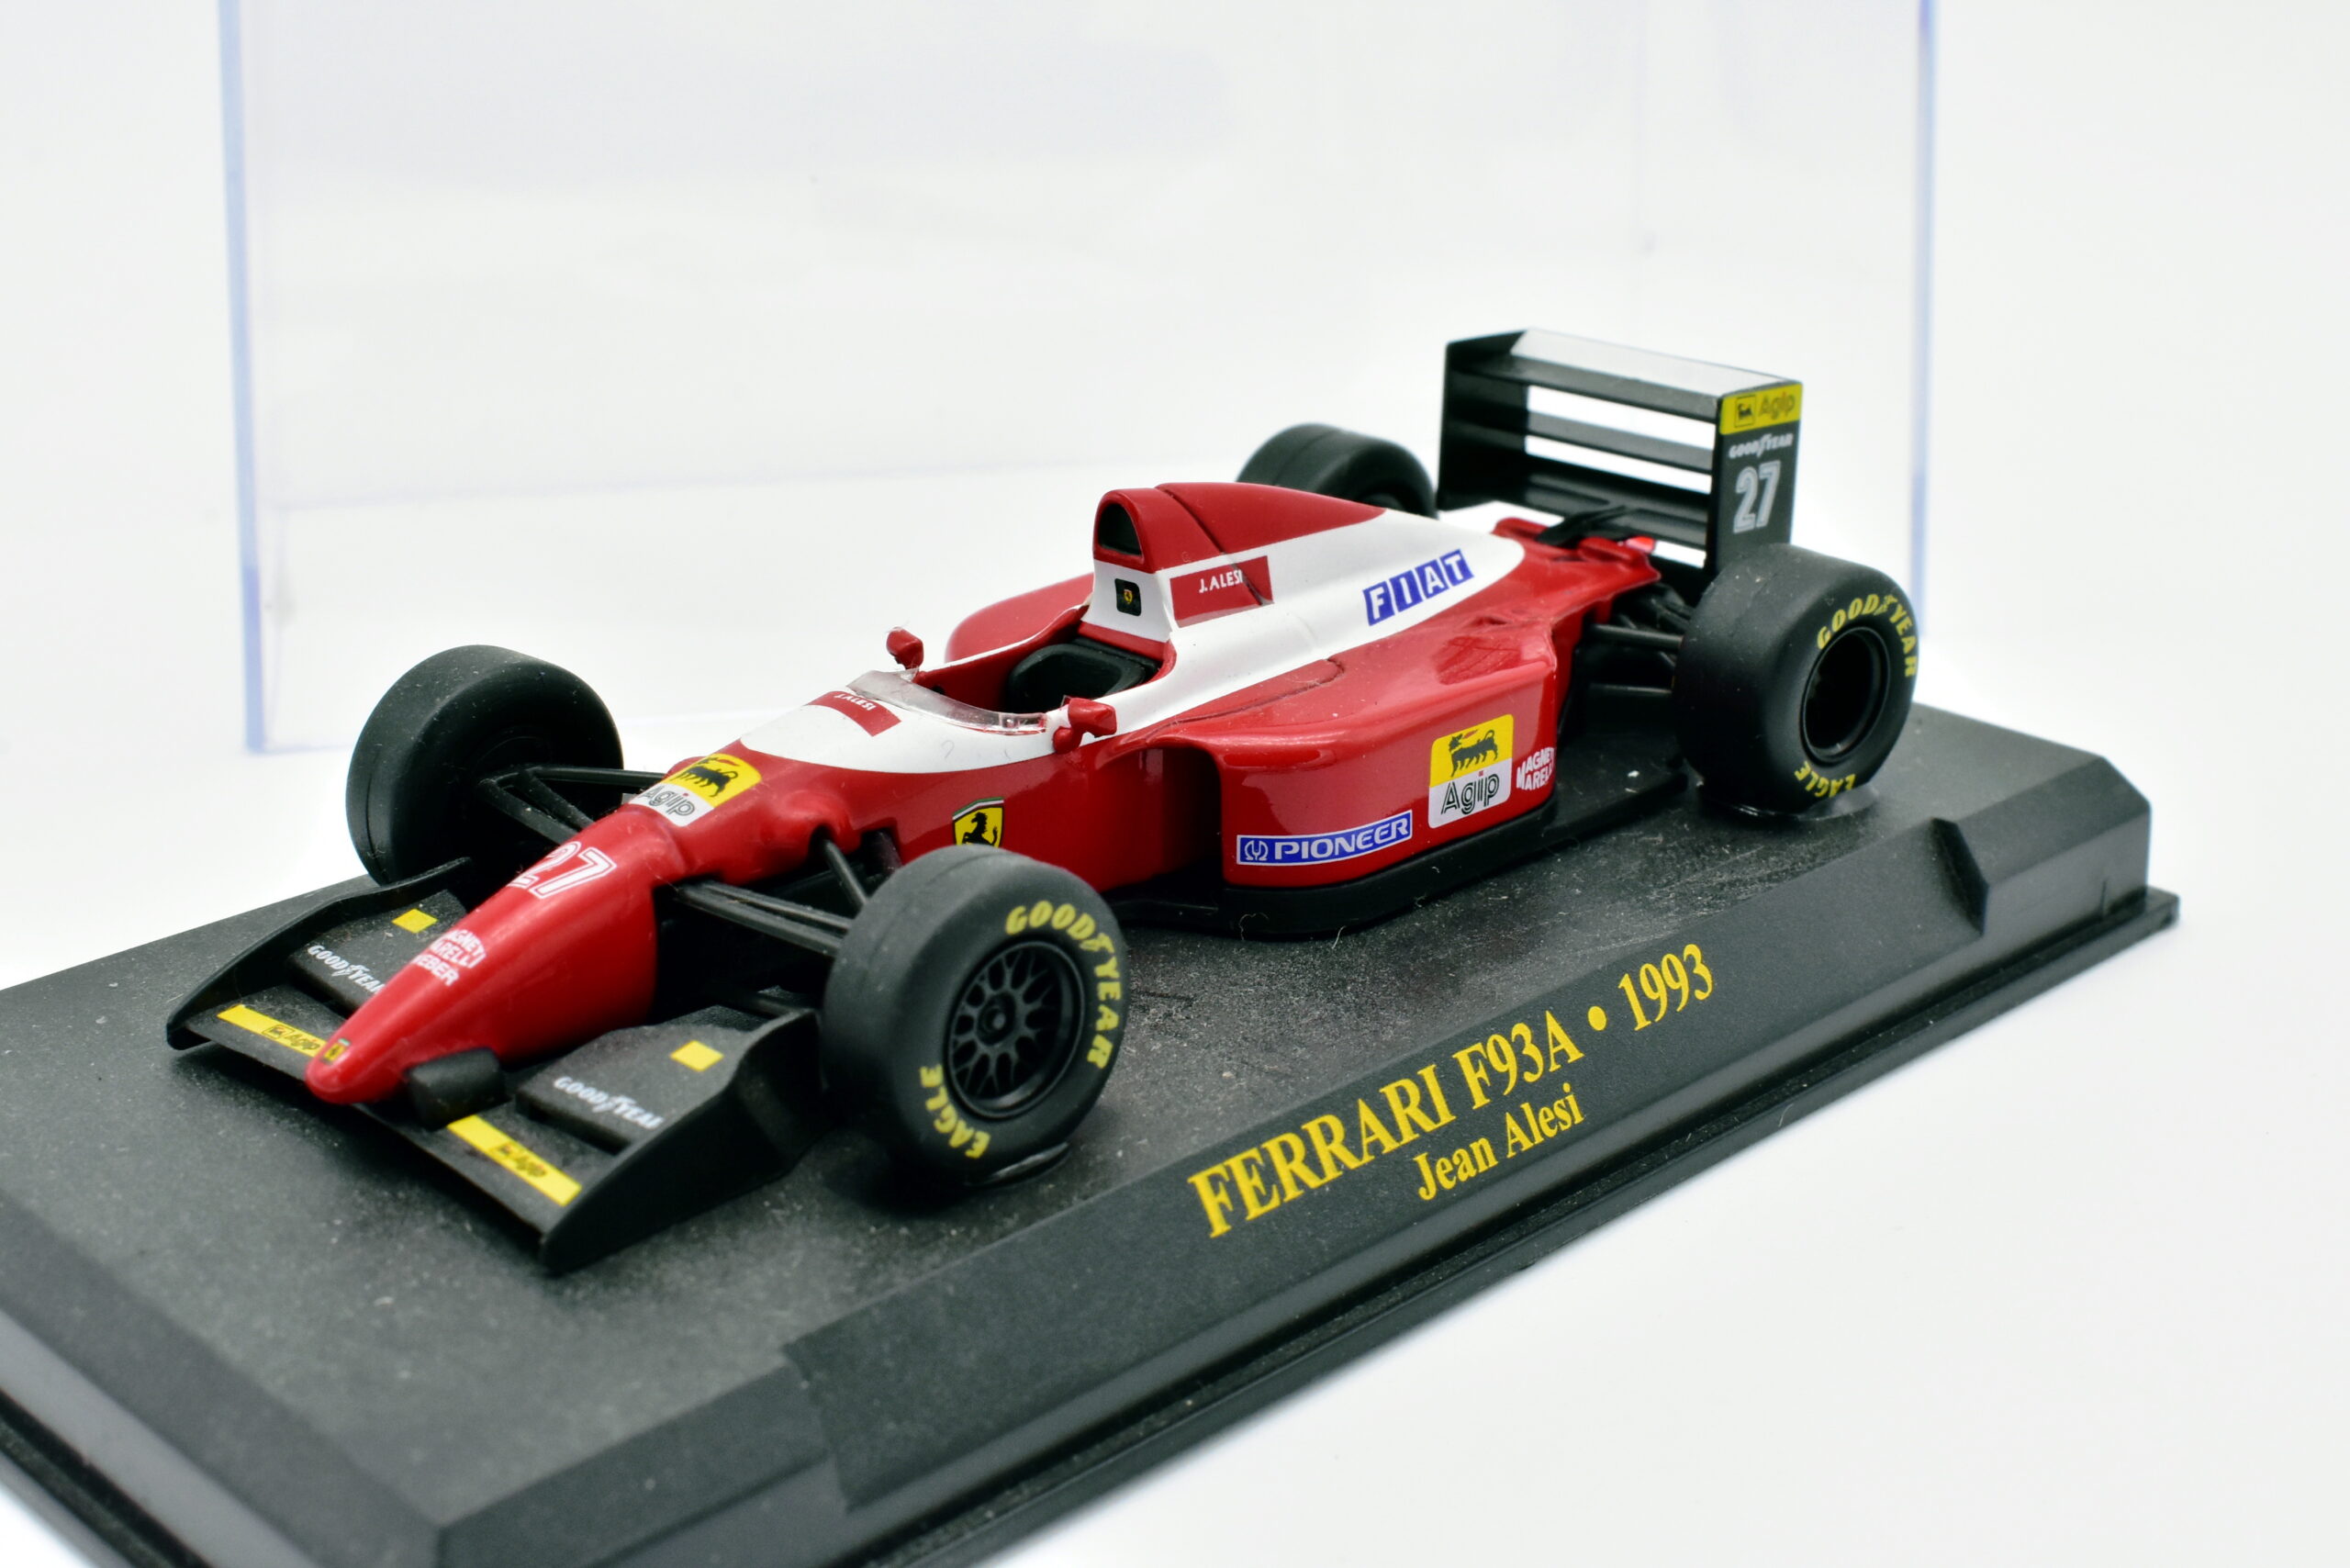 Modellino auto Ferrari F1 F93A 1993 scala 1:43 Formula 1 Alesi ixo - Arcadia  Modellismo